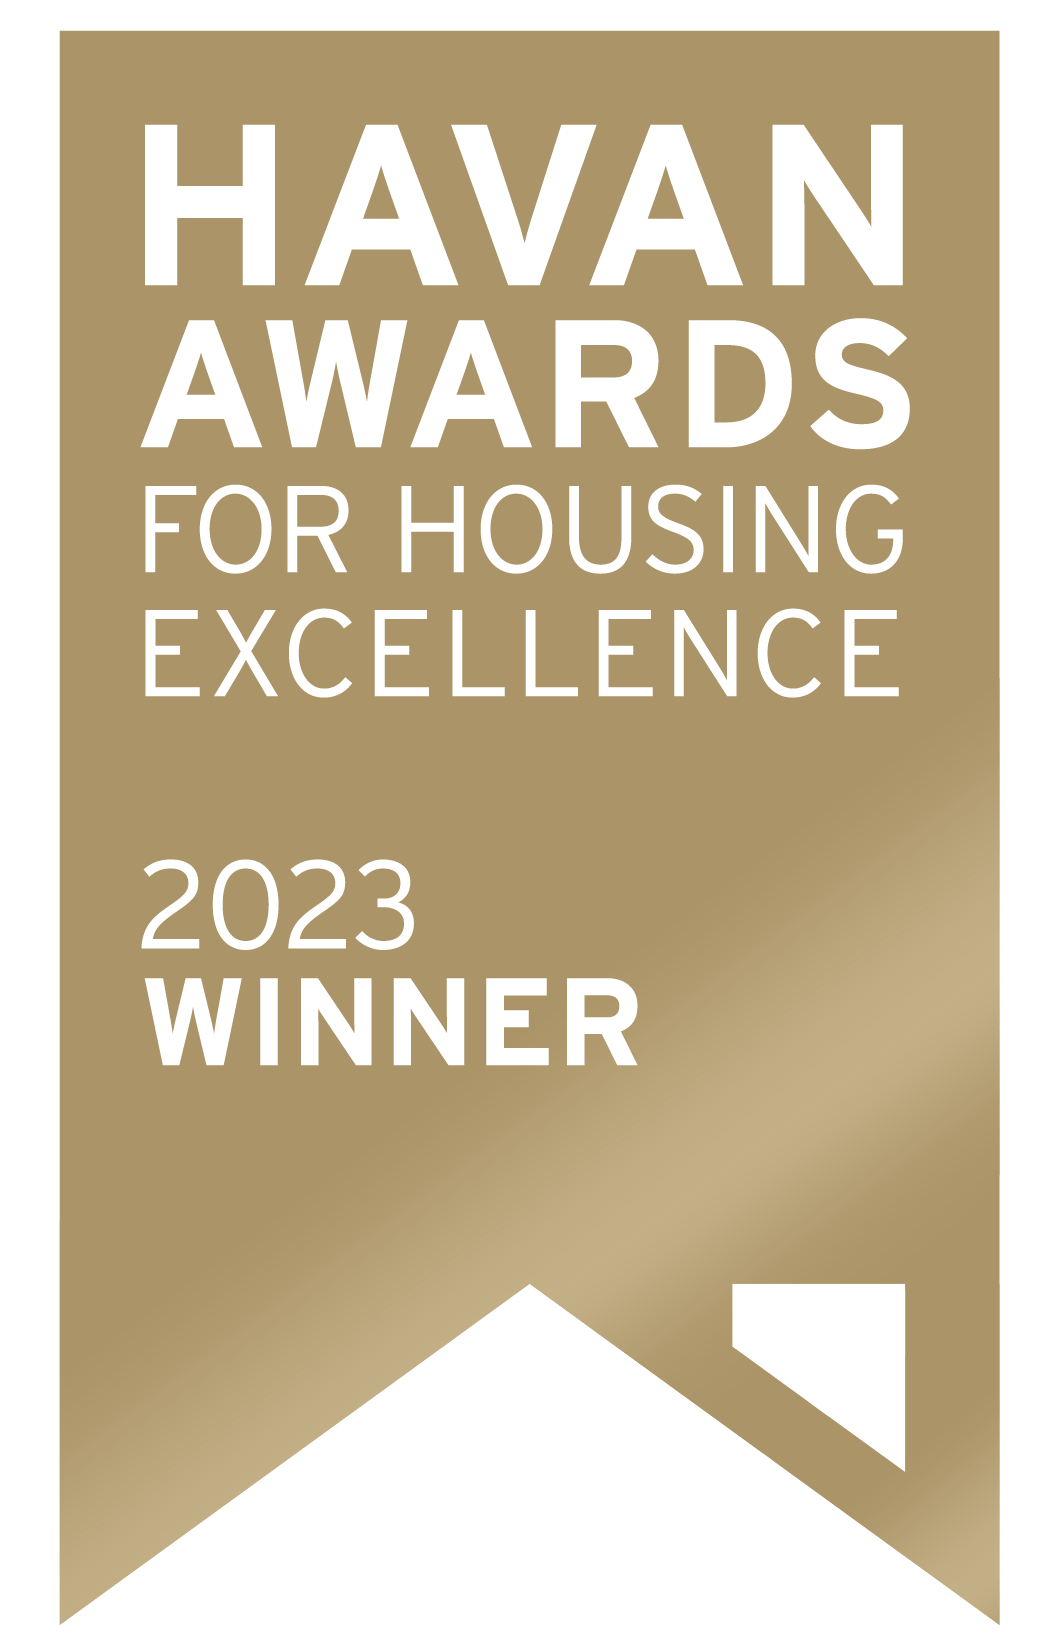 Havan Awards for Housing Excellence - 2023 Winner